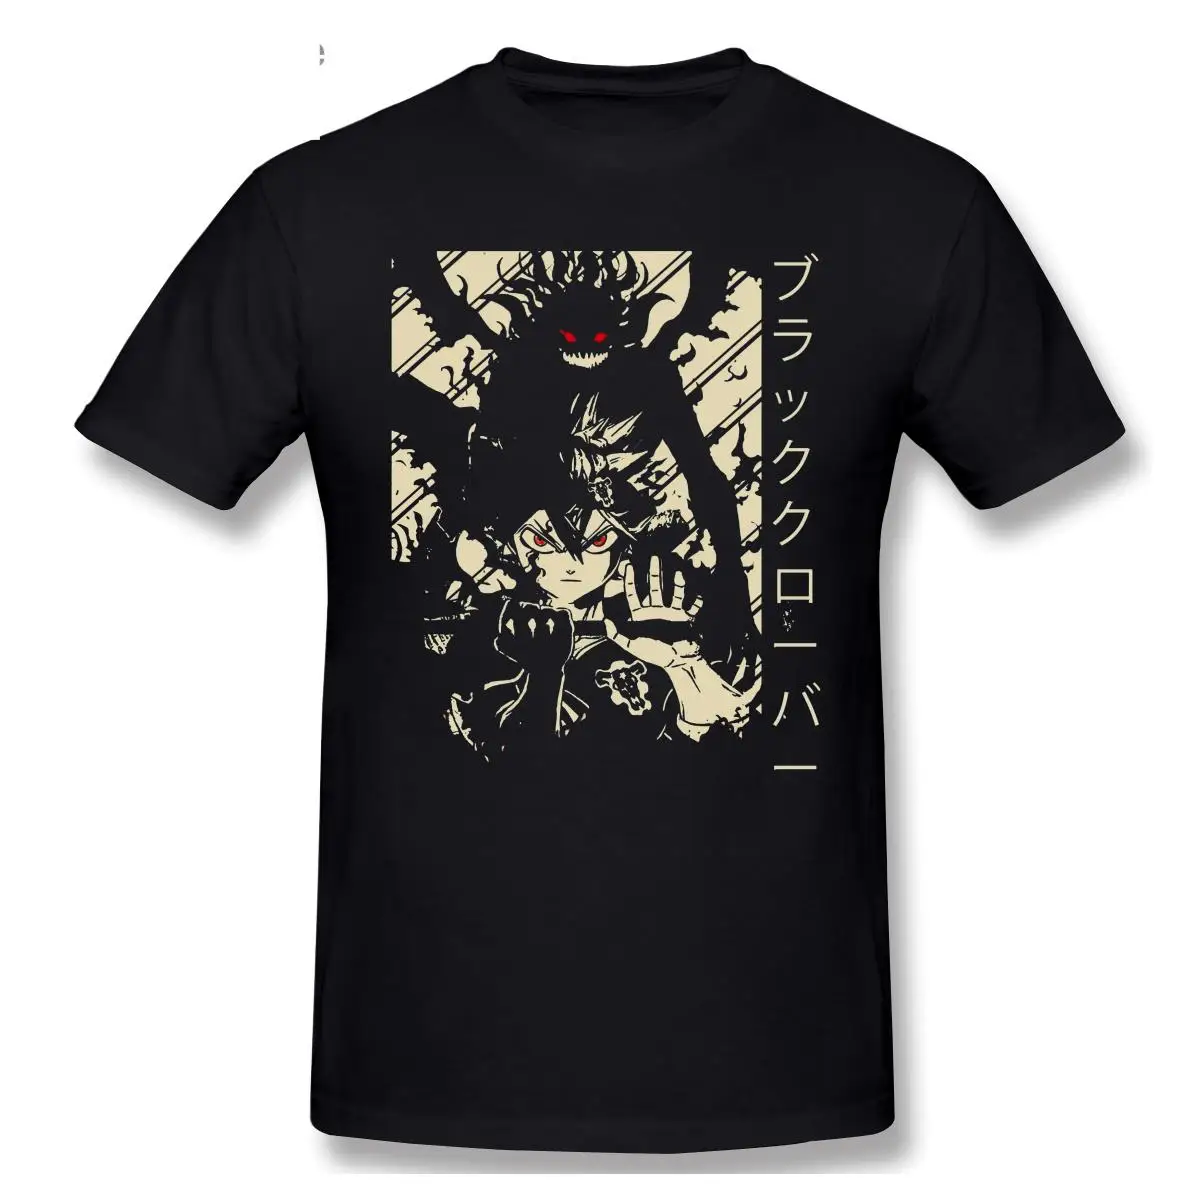 

2021 модная футболка с графическим рисунком из мультфильма аниме черный клевер Аста Повседневная мужская футболка с коротким рукавом и круглым вырезом из 100% хлопка футболки Топ